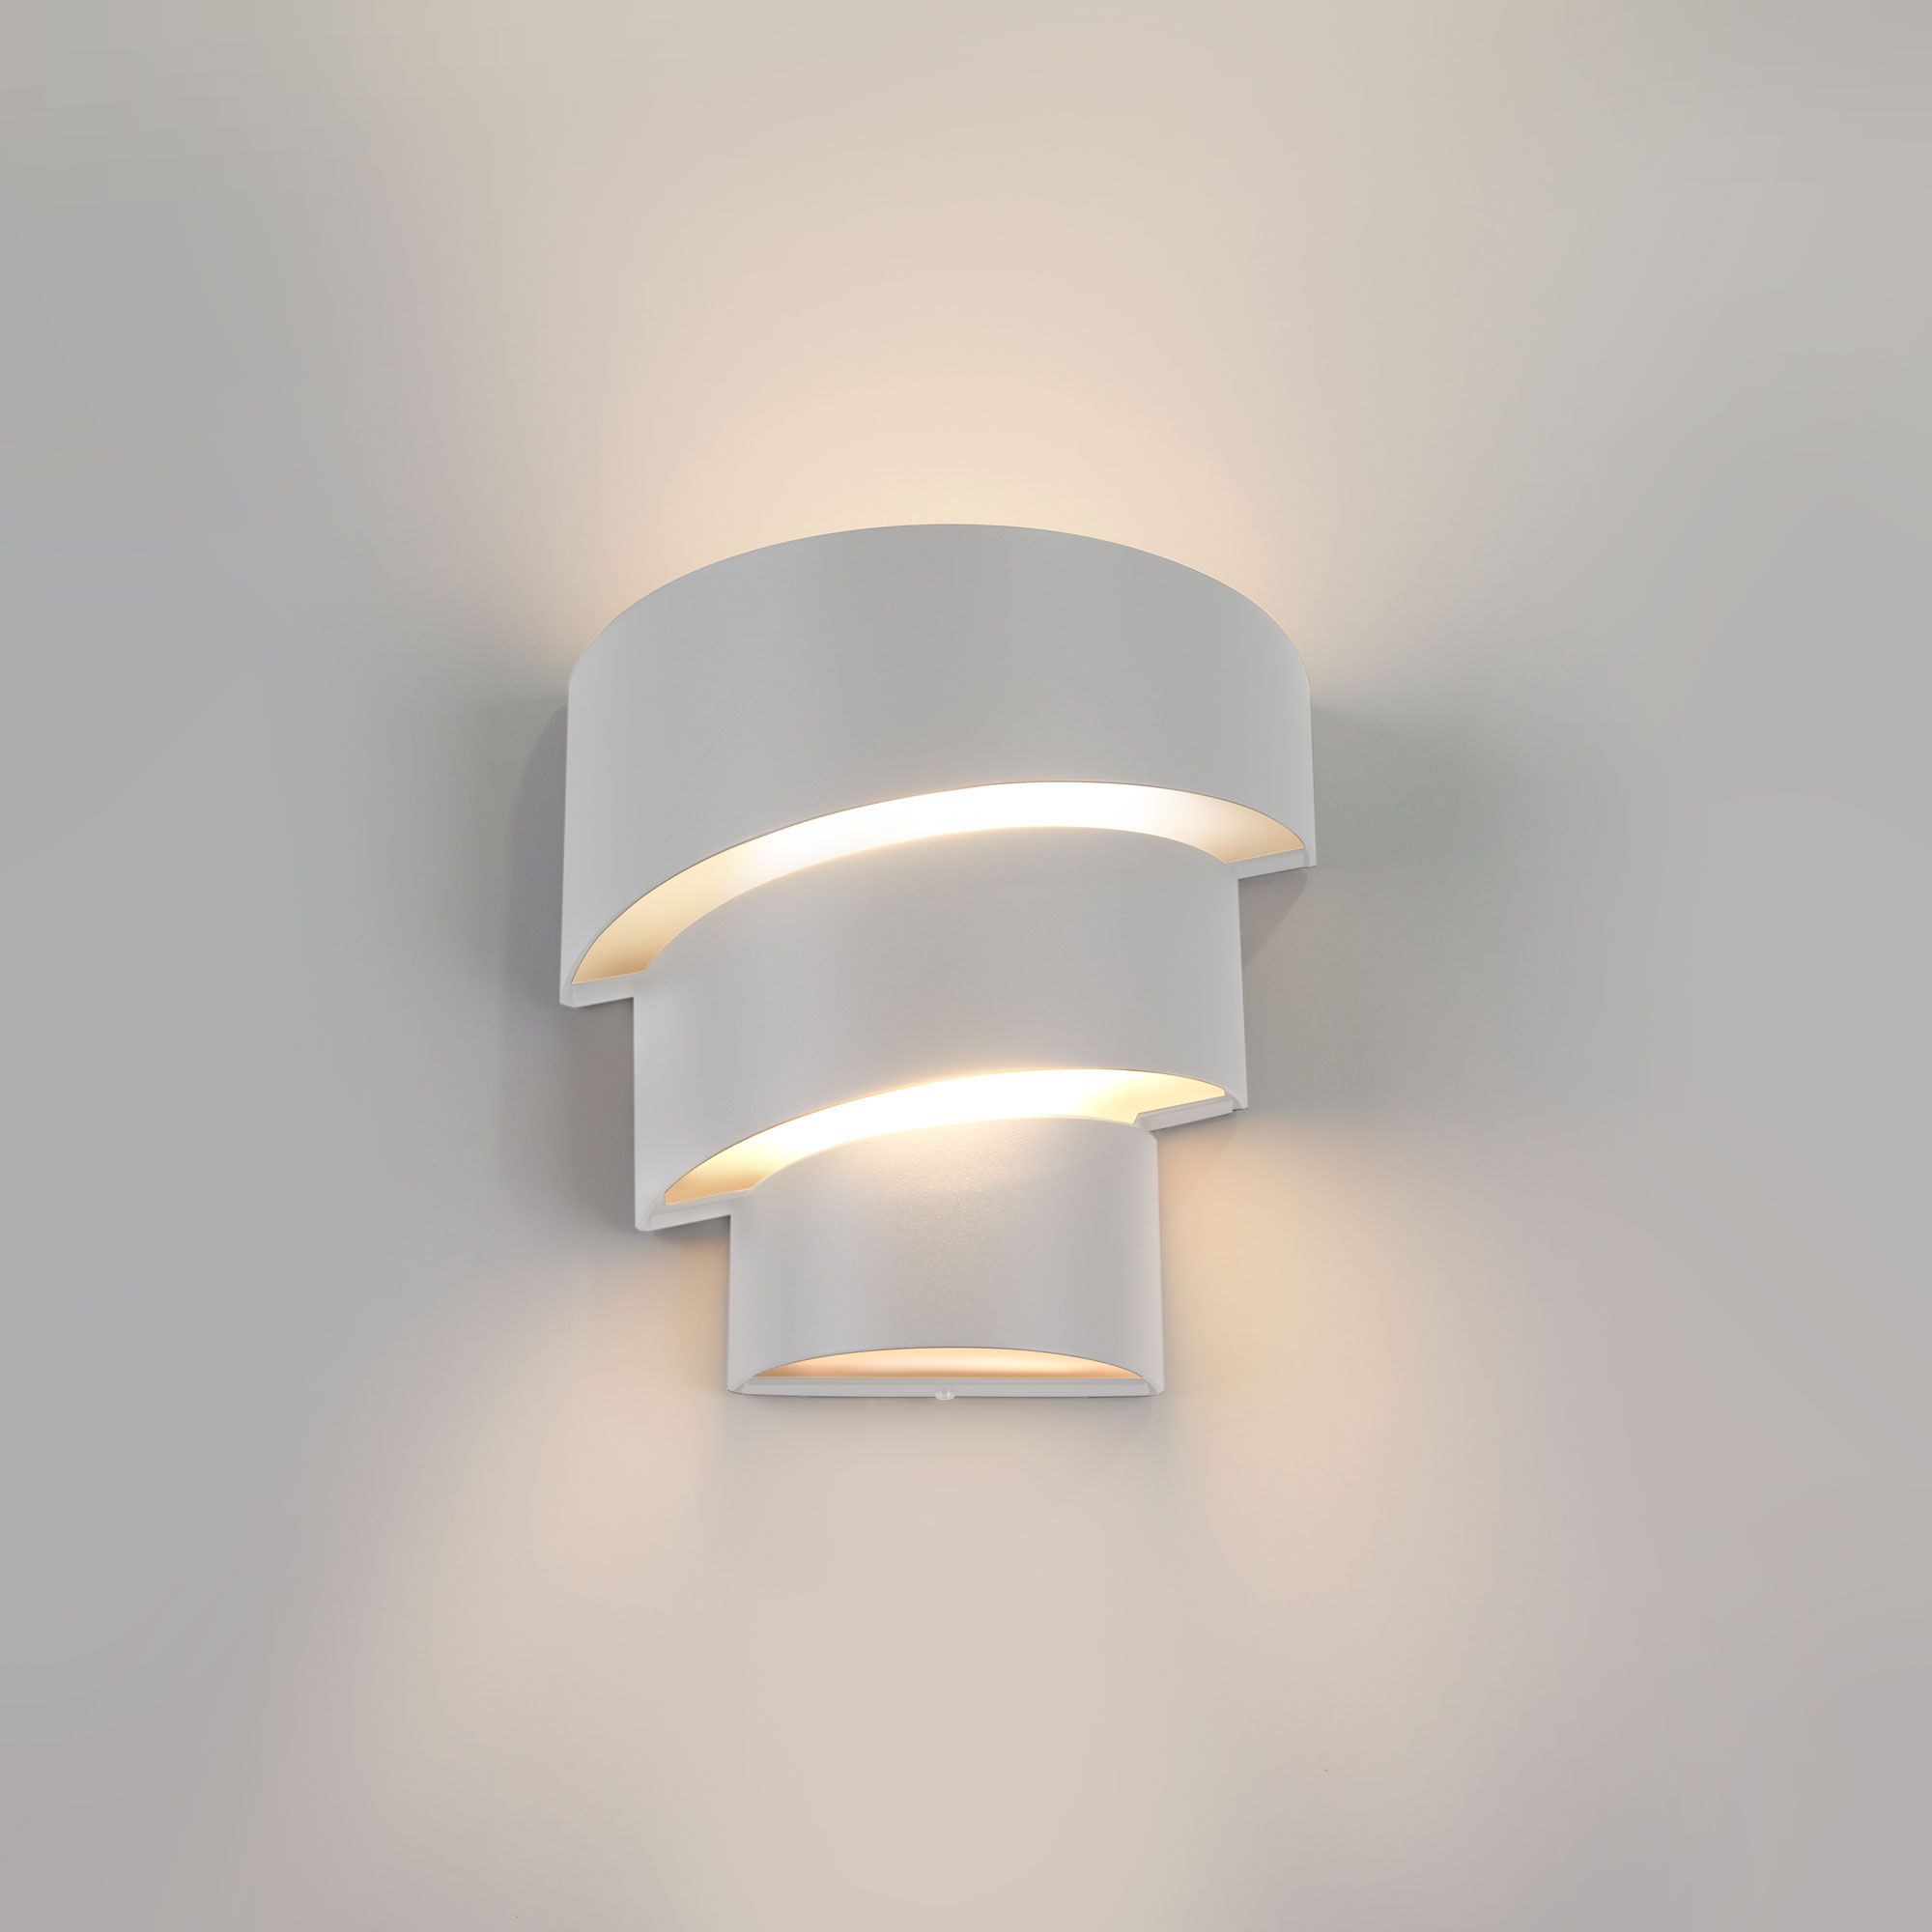 Пылевлагозащи<wbr>щенный светодиодный светильник Helix белый IP54 1535 Techno LED белый. Фото 1